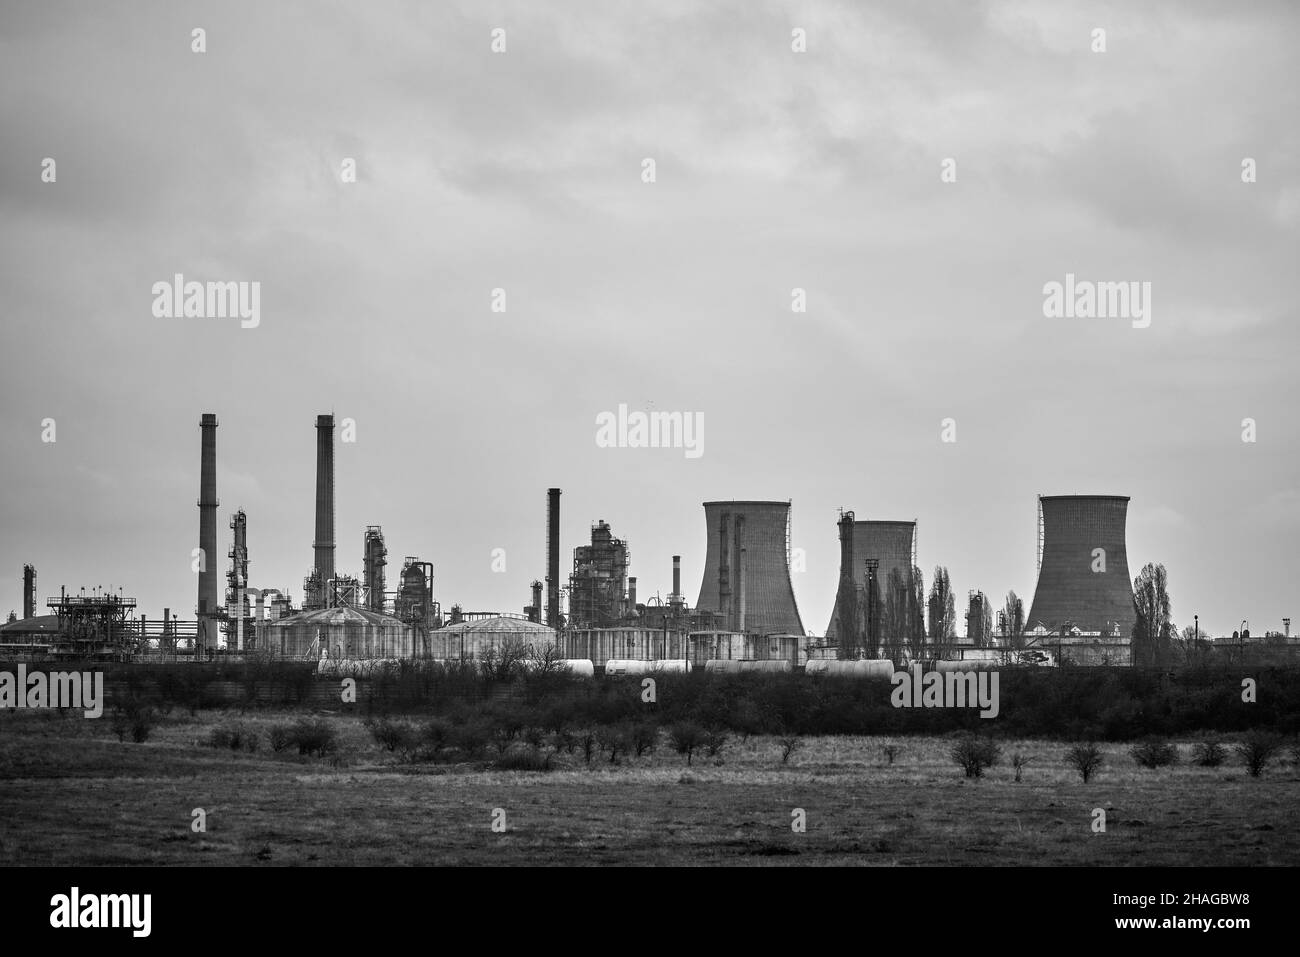 paysage industriel avec une raffinerie, industrie polluante.Ruines industrielles. Banque D'Images